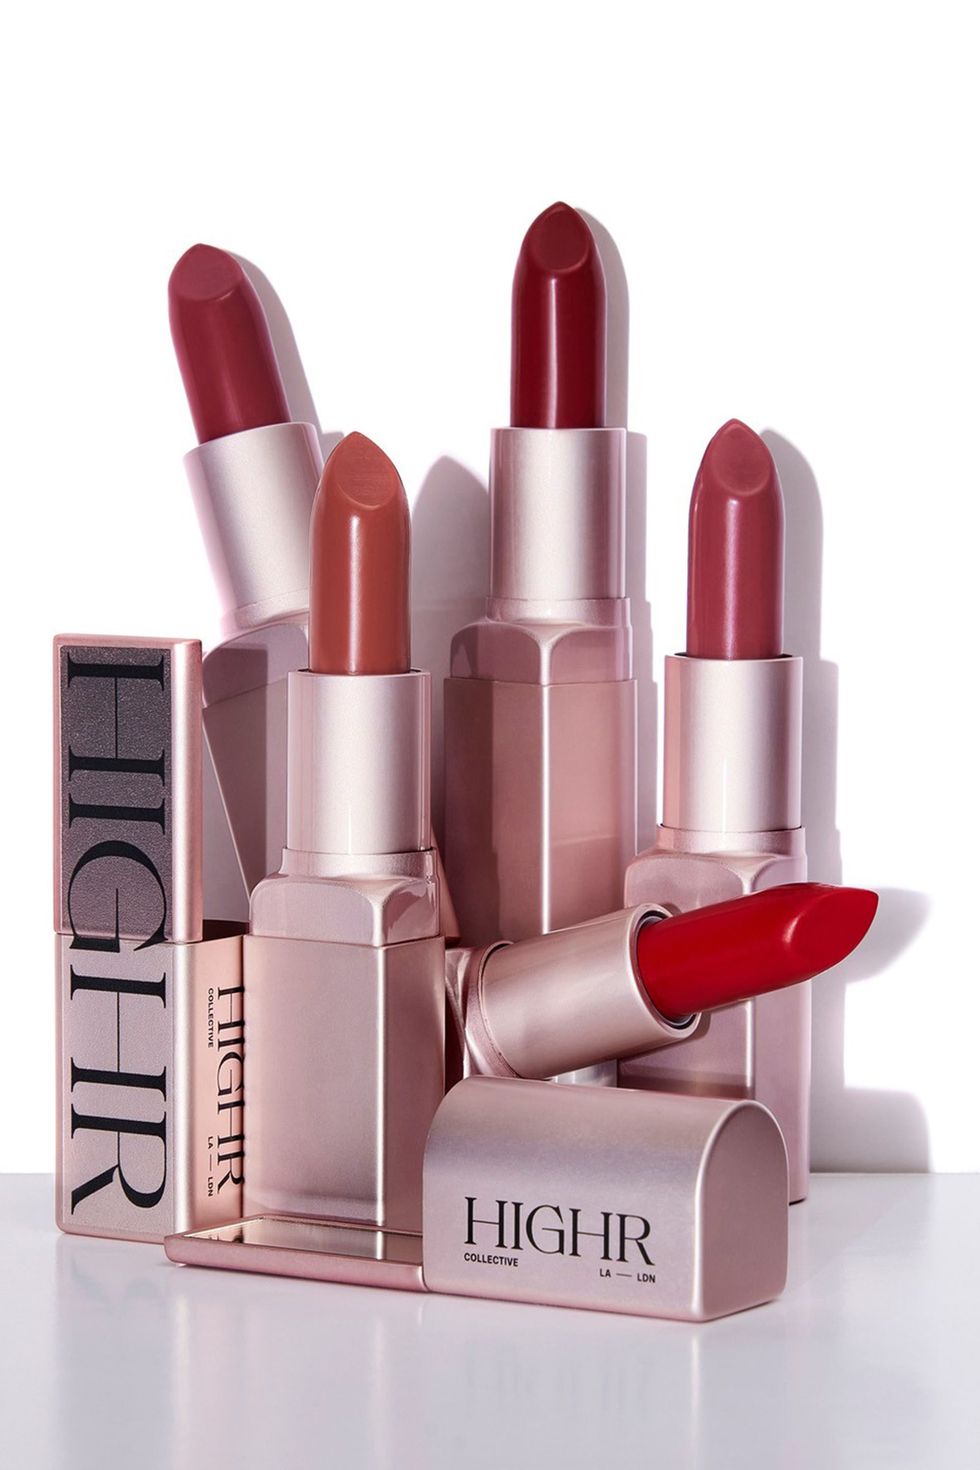 Highr Collective Lipsticks